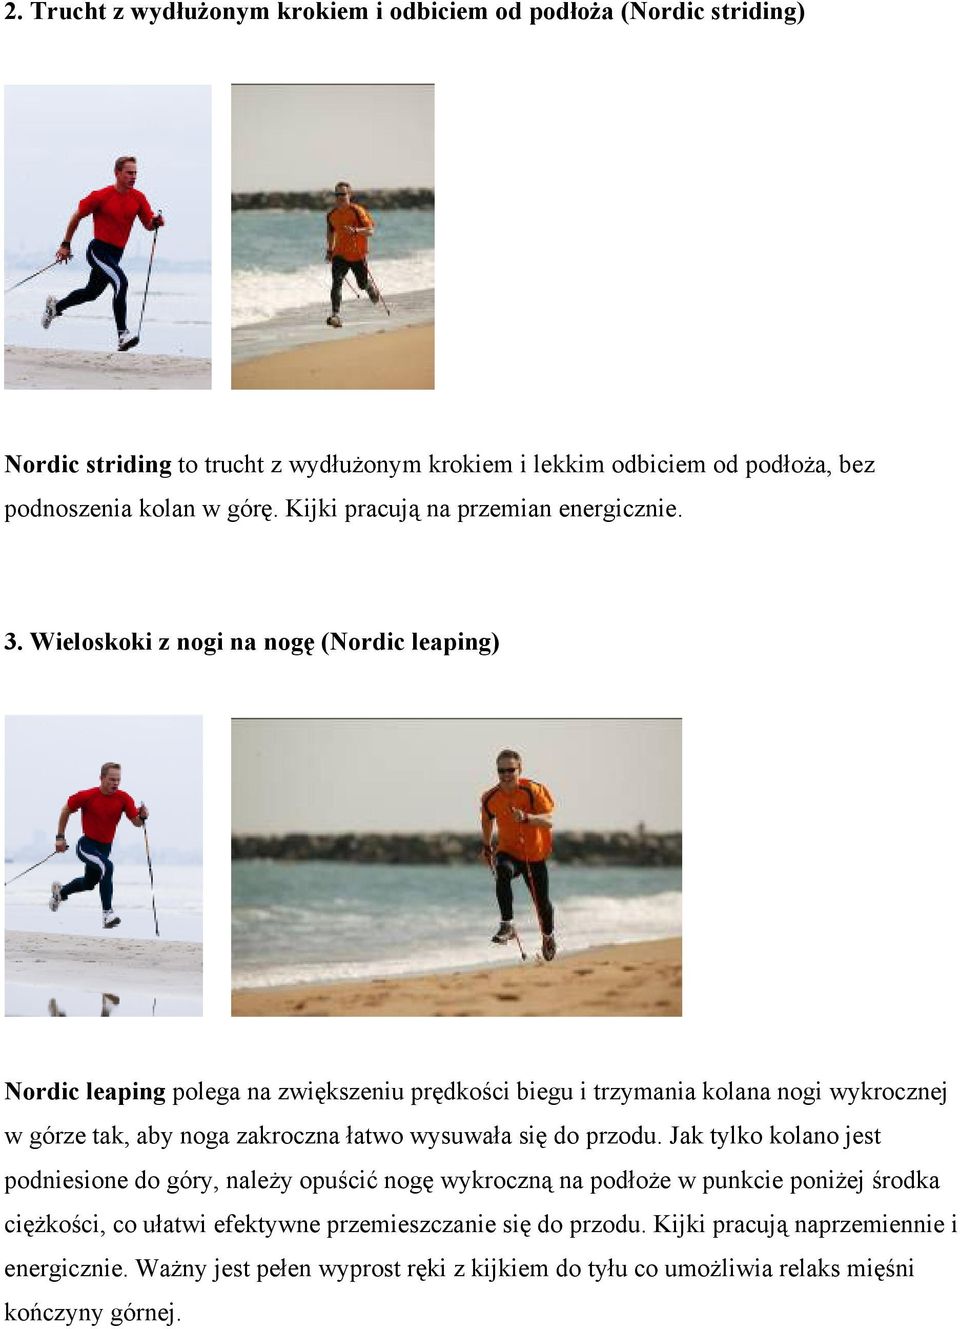 Wieloskoki z nogi na nogę (Nordic leaping) Nordic leaping polega na zwiększeniu prędkości biegu i trzymania kolana nogi wykrocznej w górze tak, aby noga zakroczna łatwo wysuwała